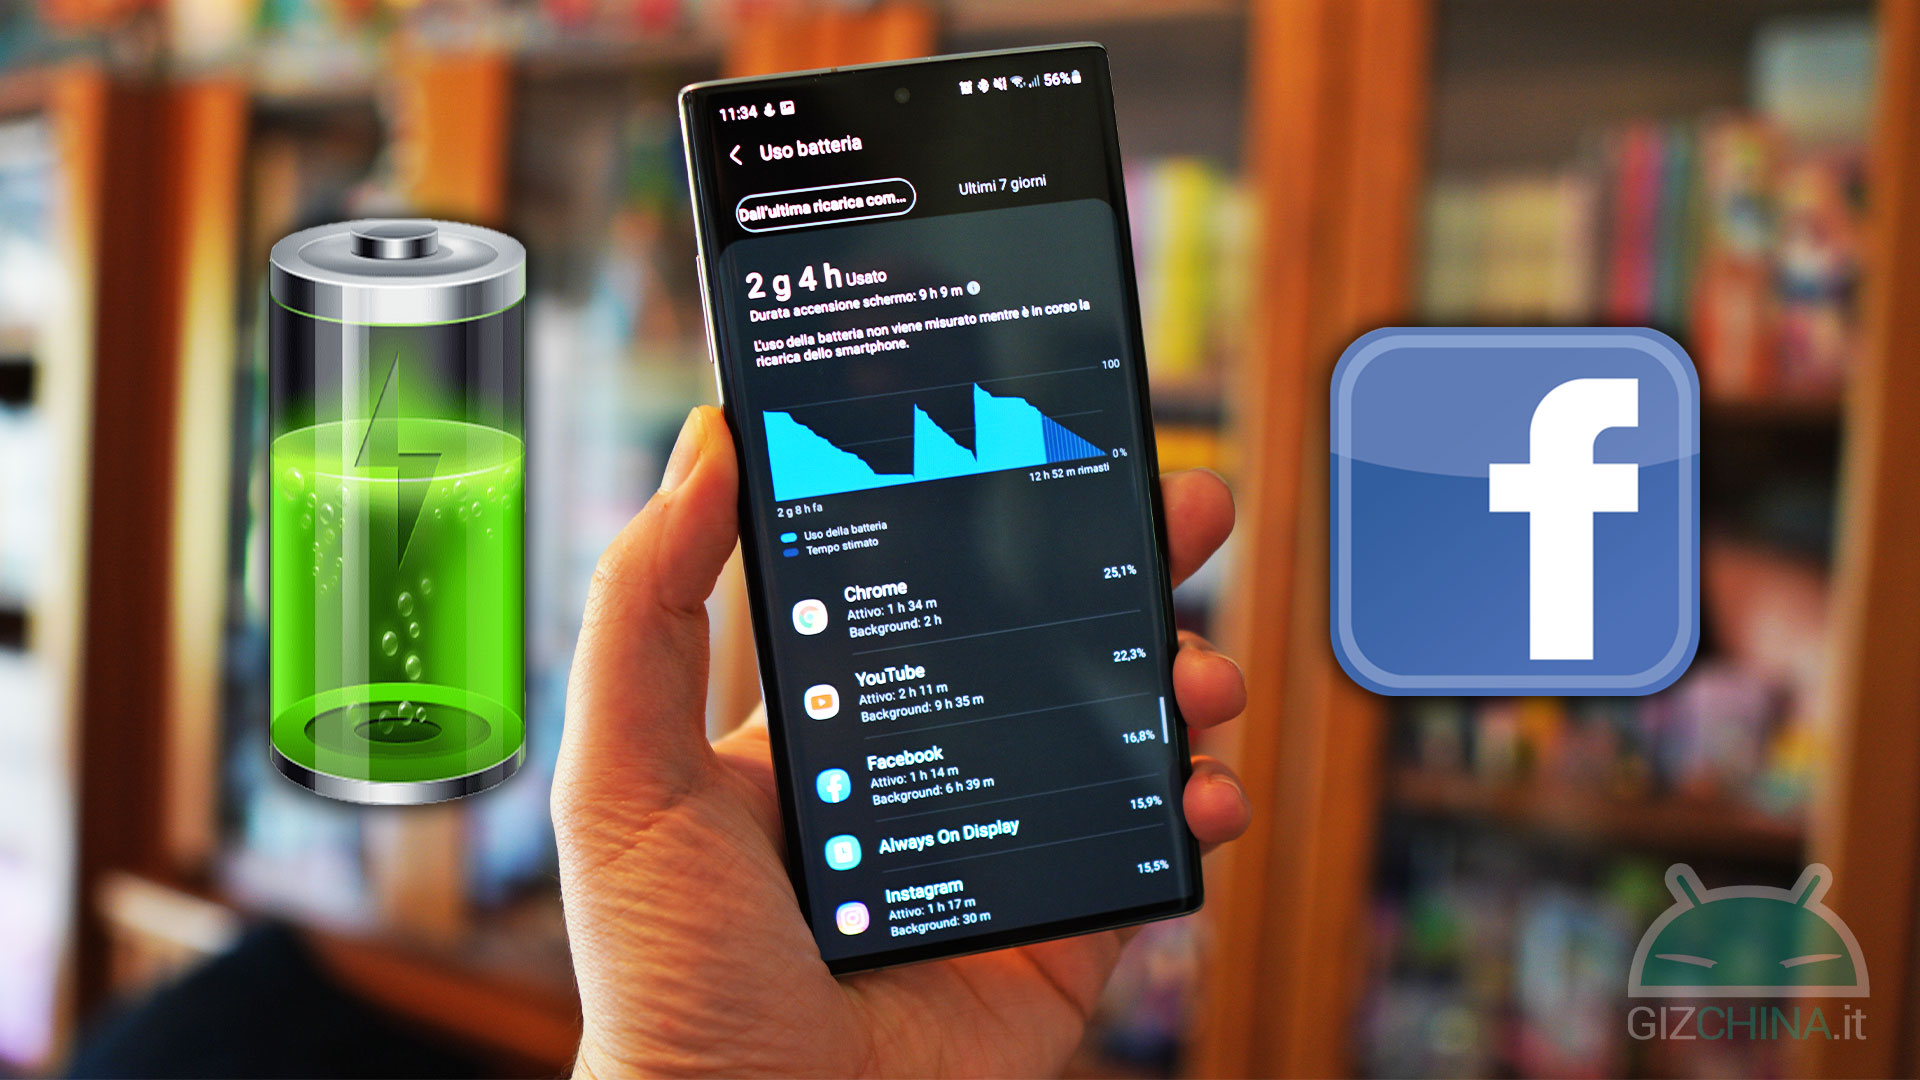 Facebook consuma troppa batteria? Come rimuovere i servizi ...